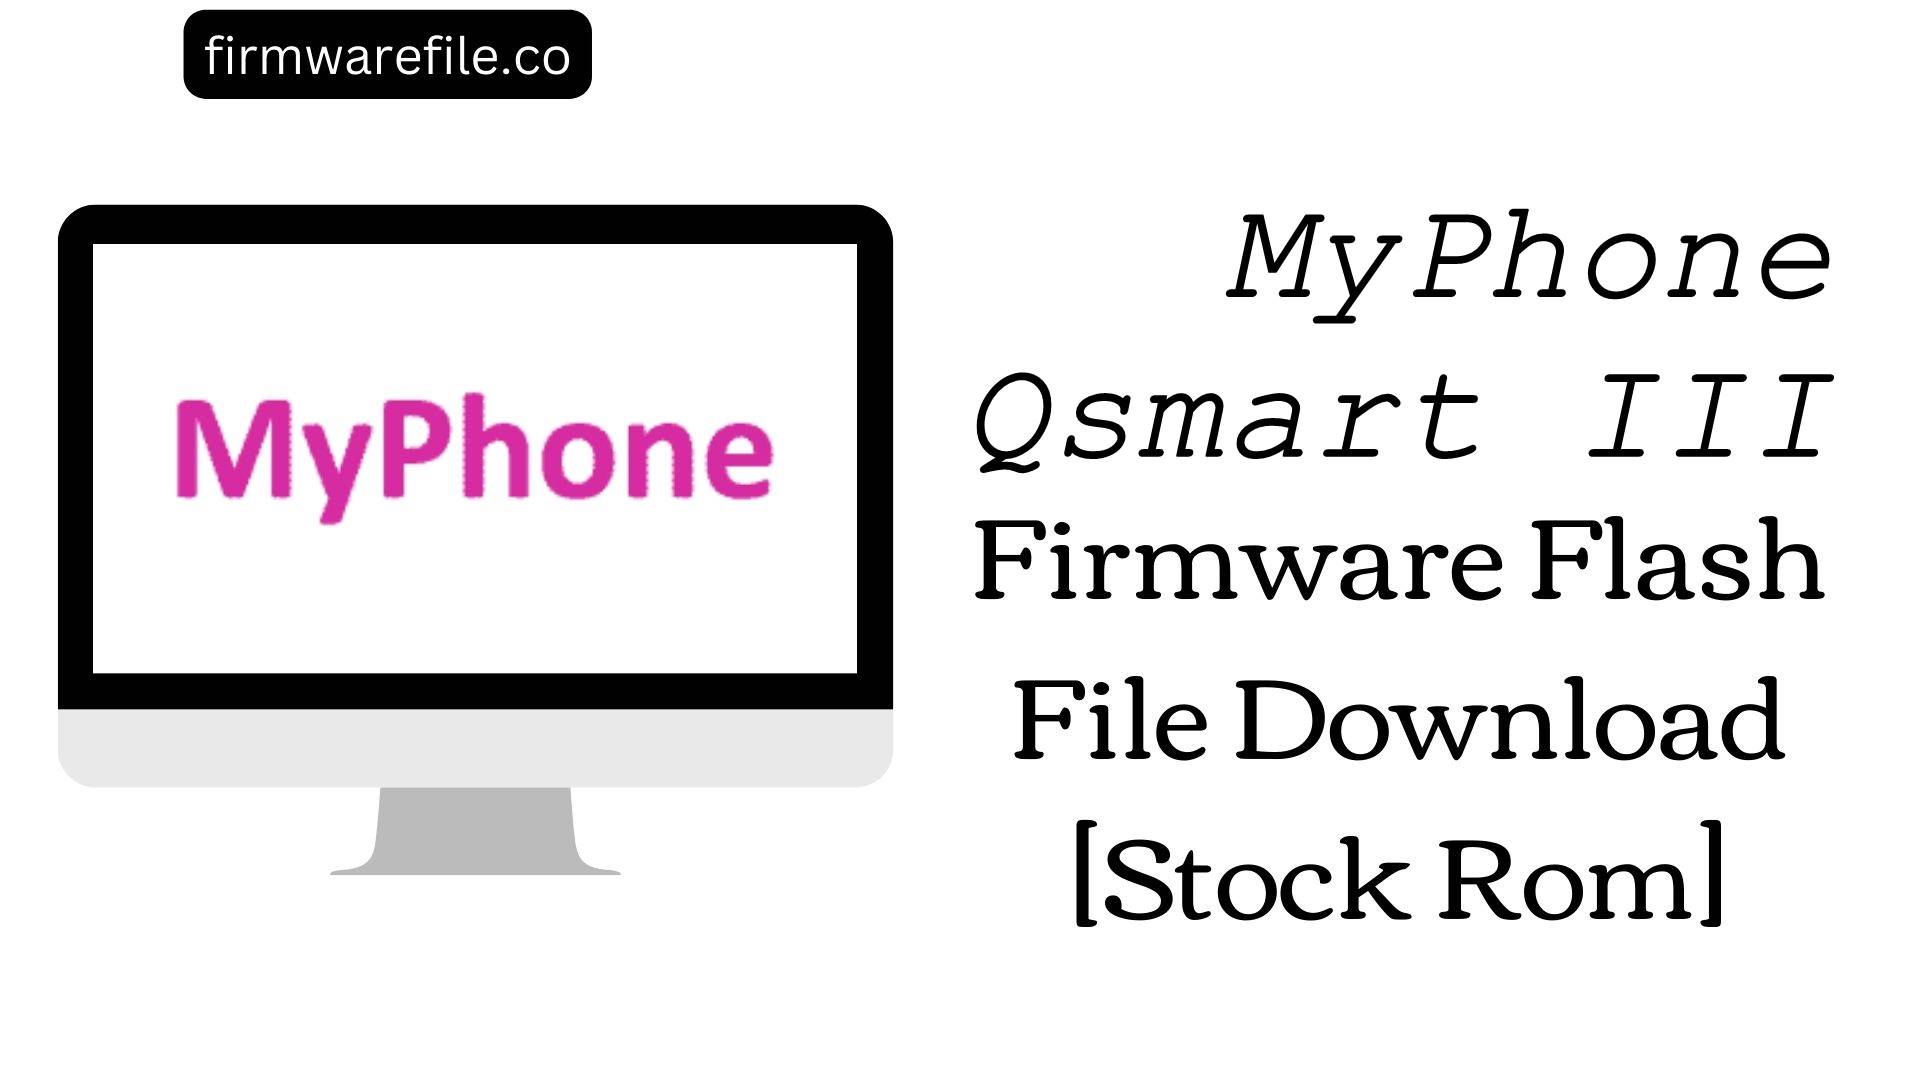 MyPhone Qsmart III